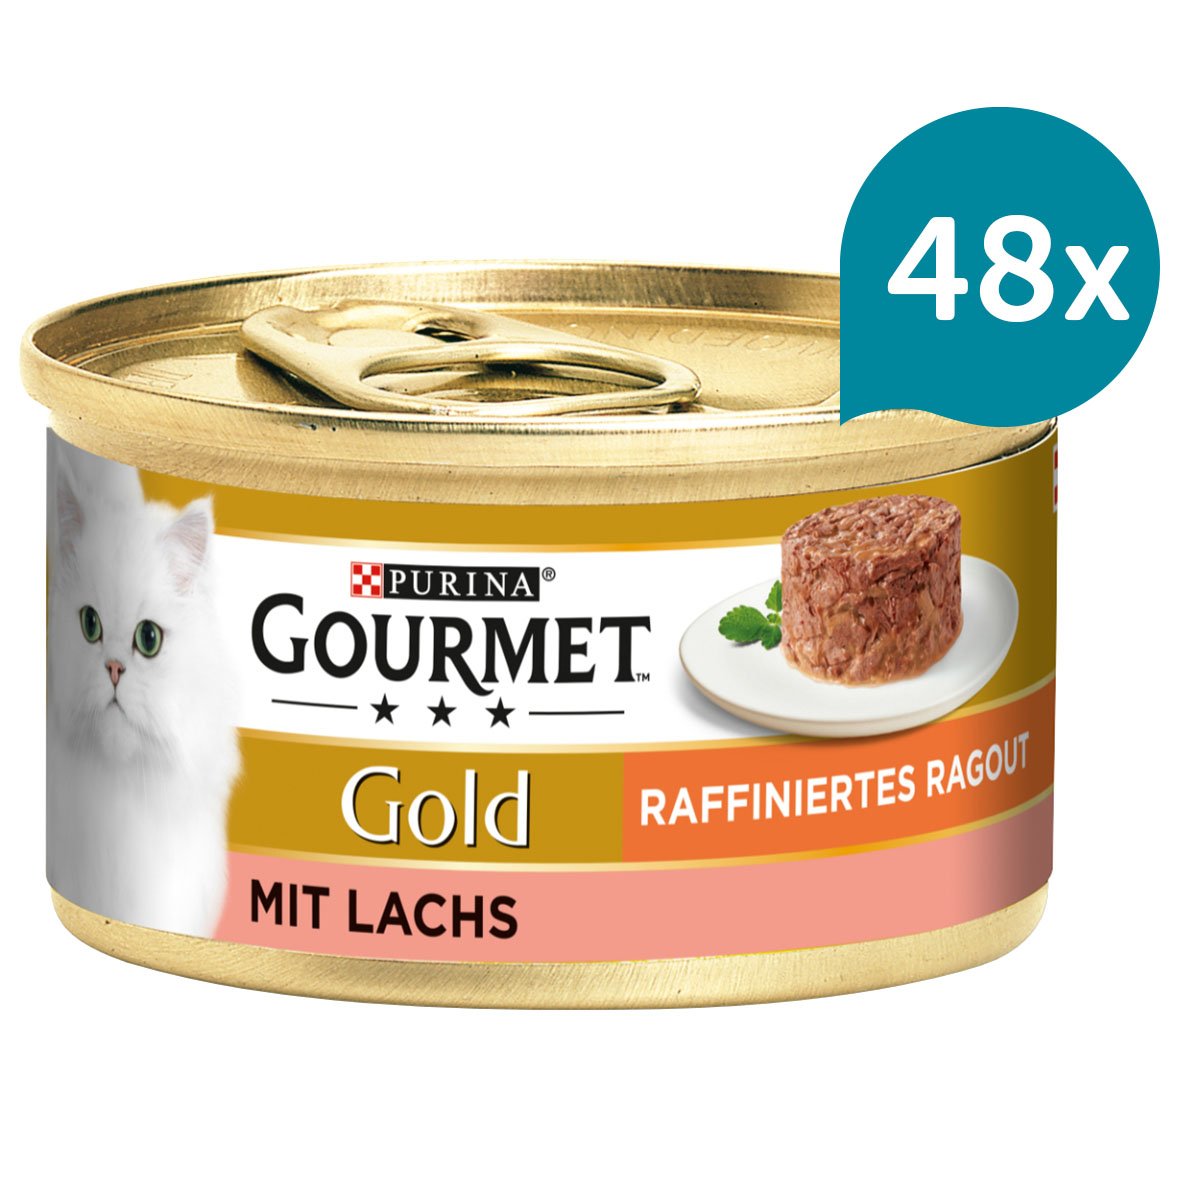 GOURMET Gold Raffiniertes Ragout mit Lachs 48x85g